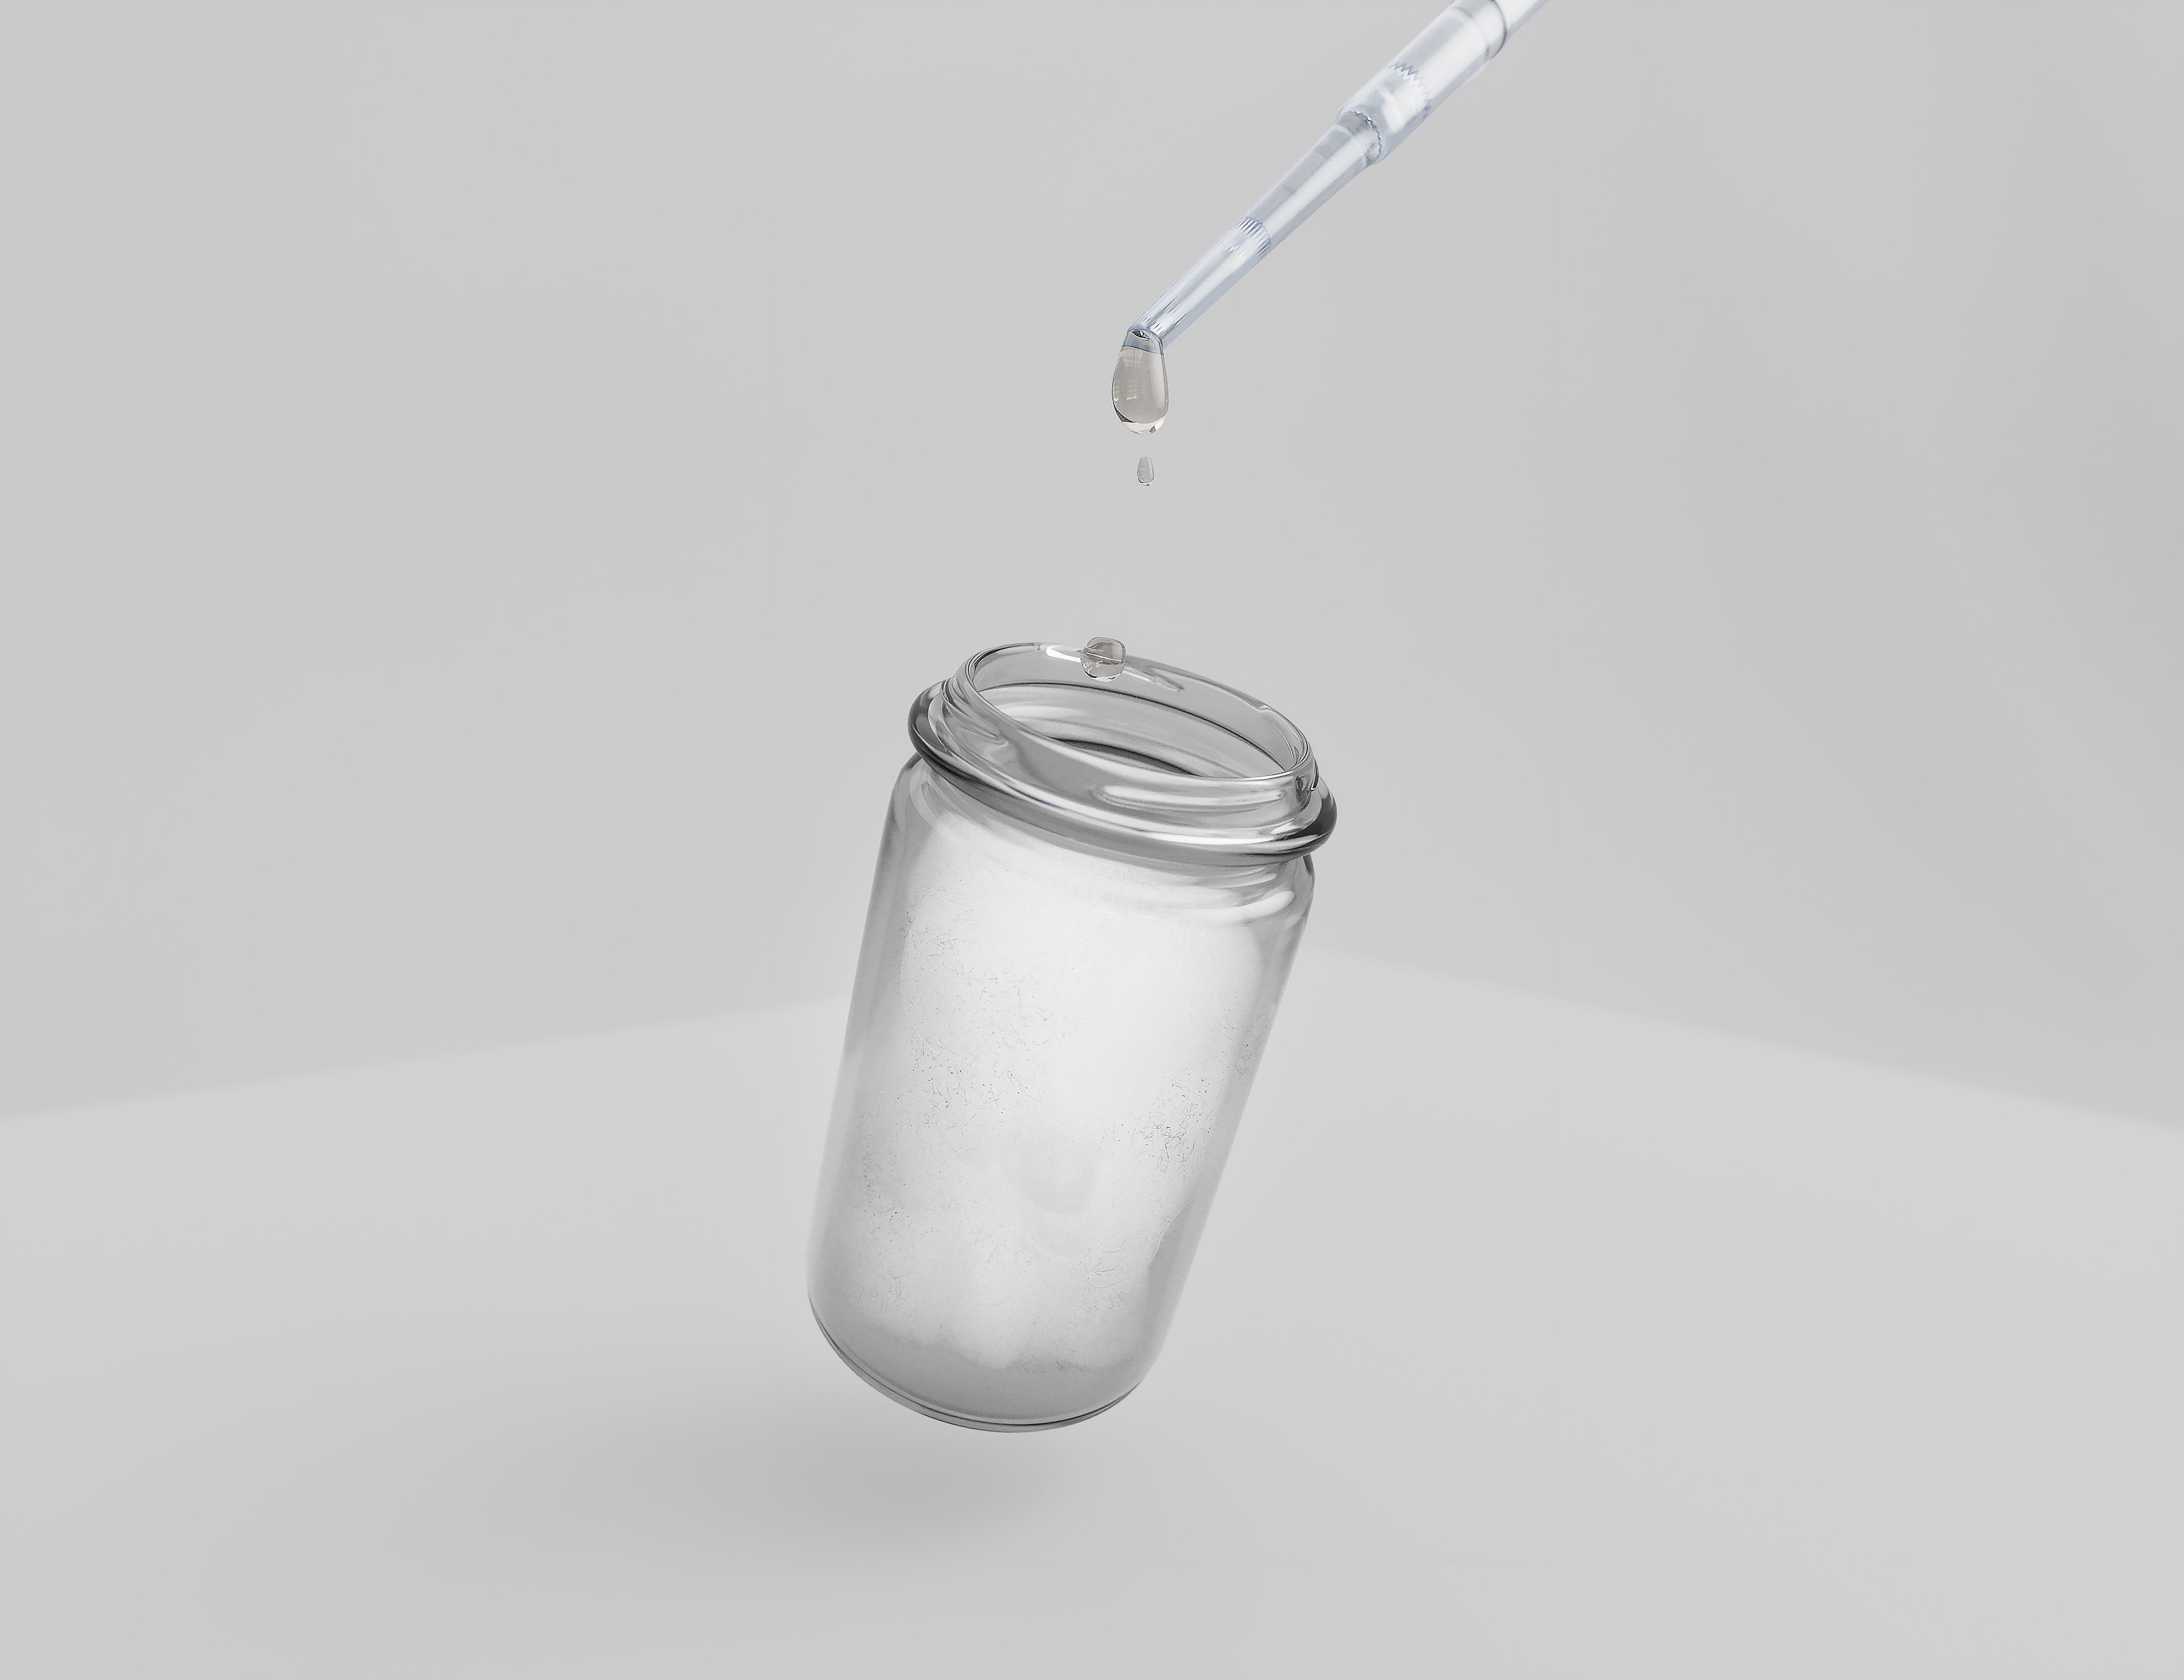 Geben Sie 2ml Ihrer Flüssigkeit in ein Probenglas